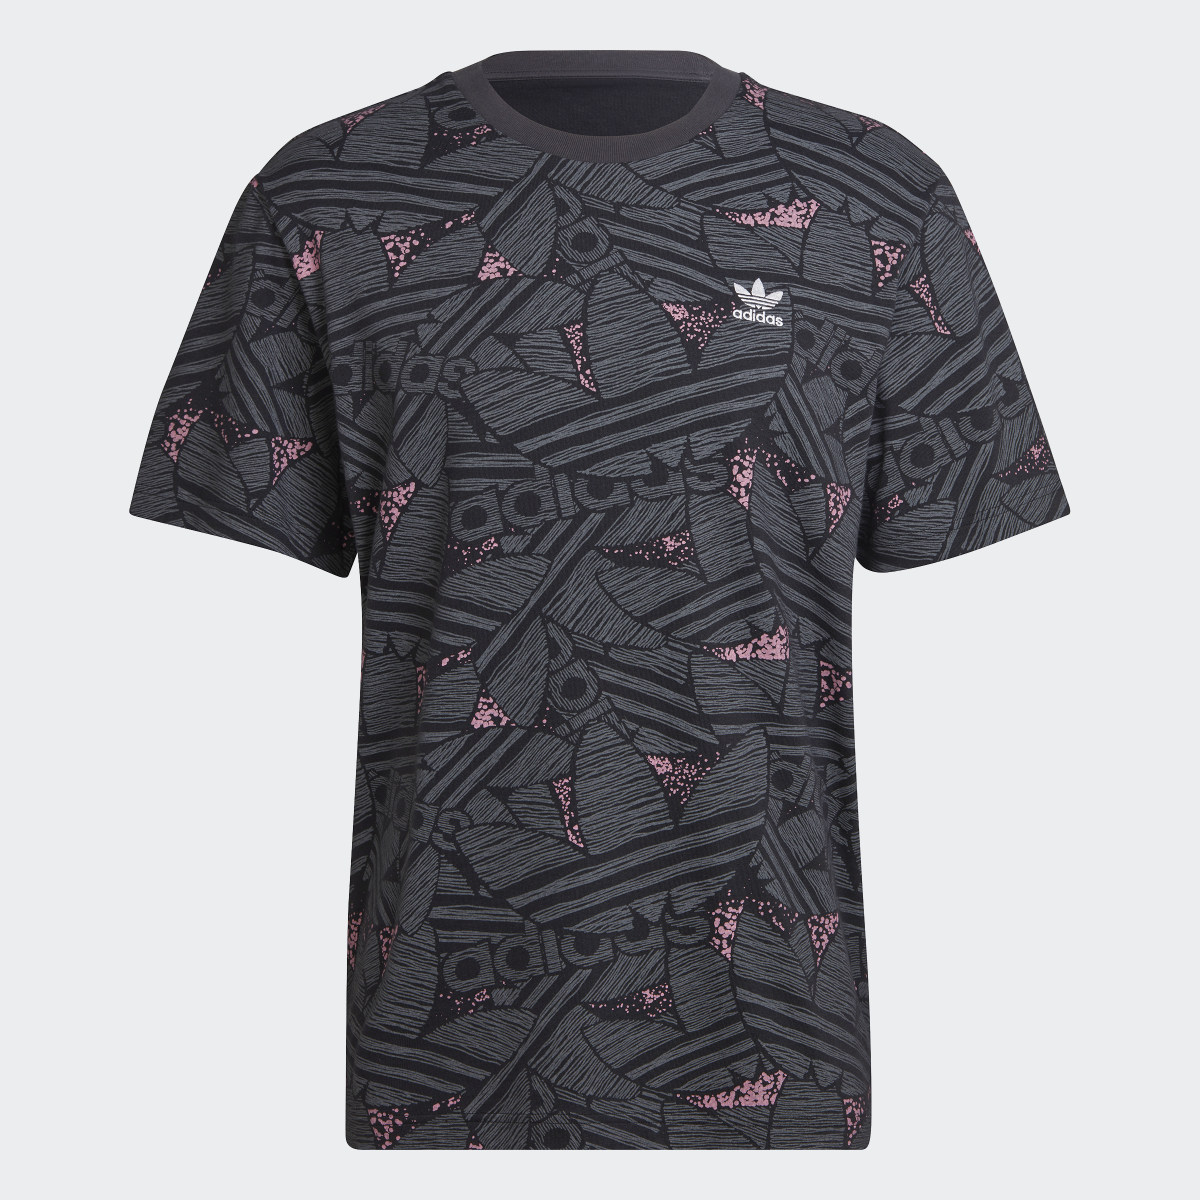 Adidas Rekive Trefoil Allover Print T-Shirt. 6